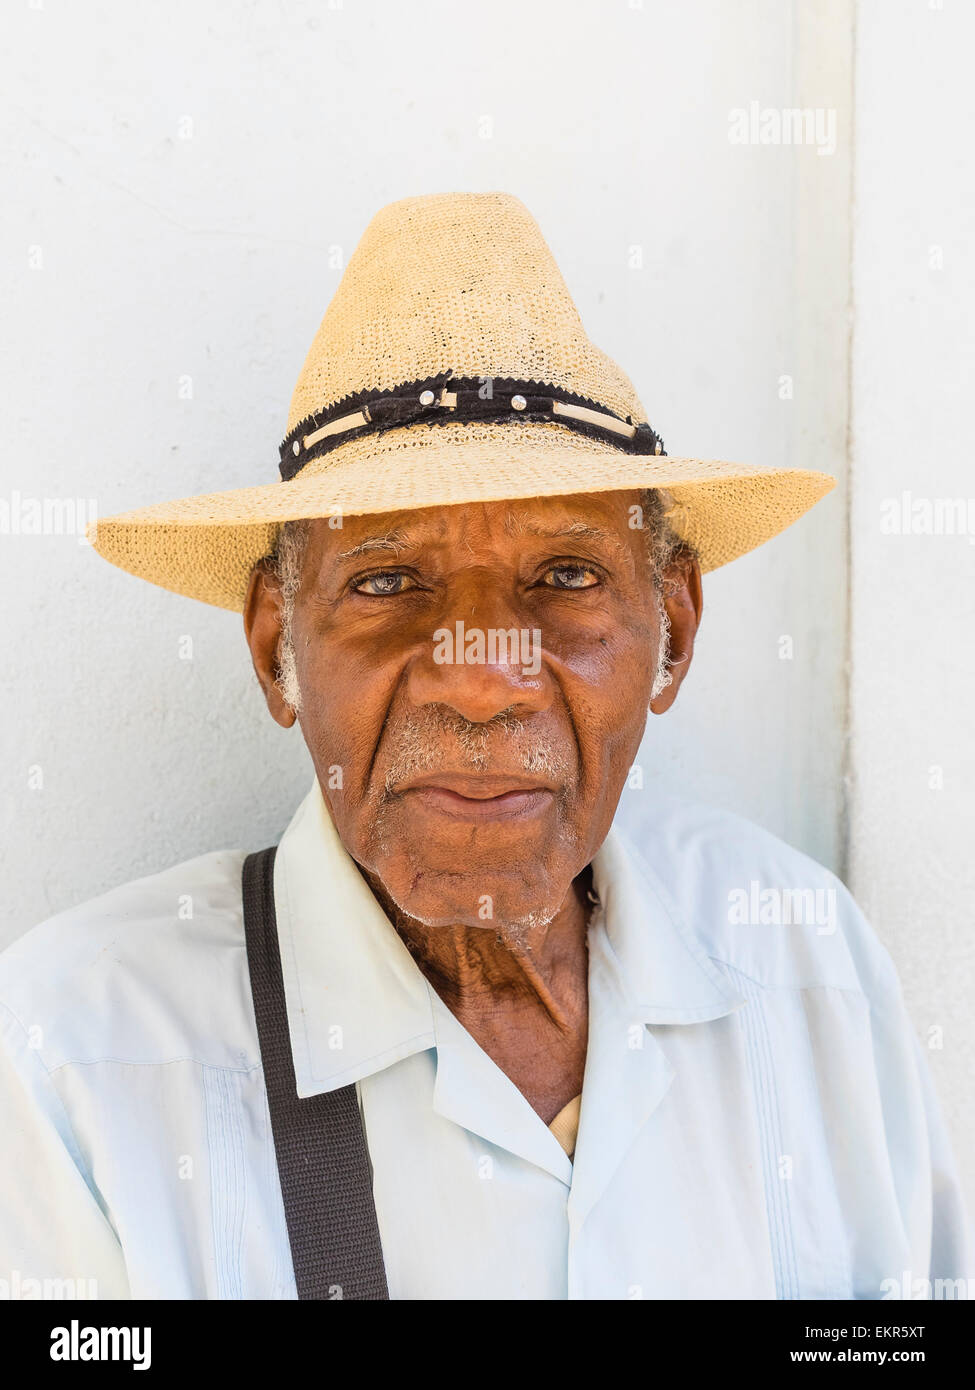 Testa e spalle ritratto di un maschio di afro-cubane senior citizen nel cappello di paglia rivolto in avanti. Foto Stock